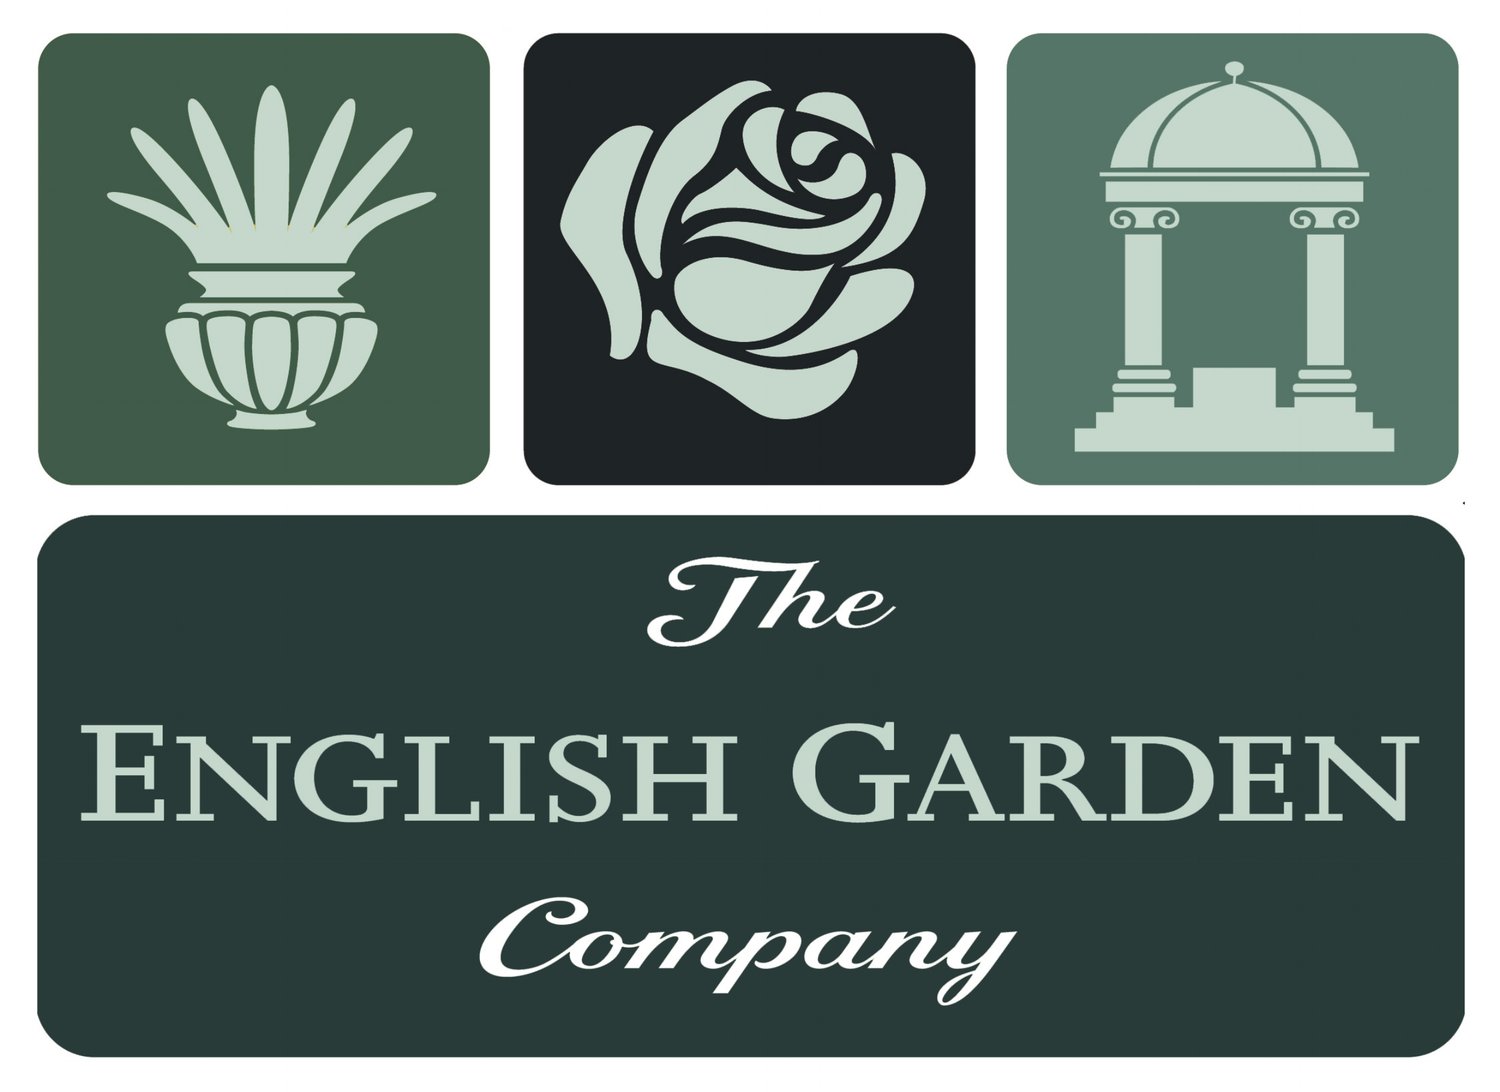 The English Garden Company